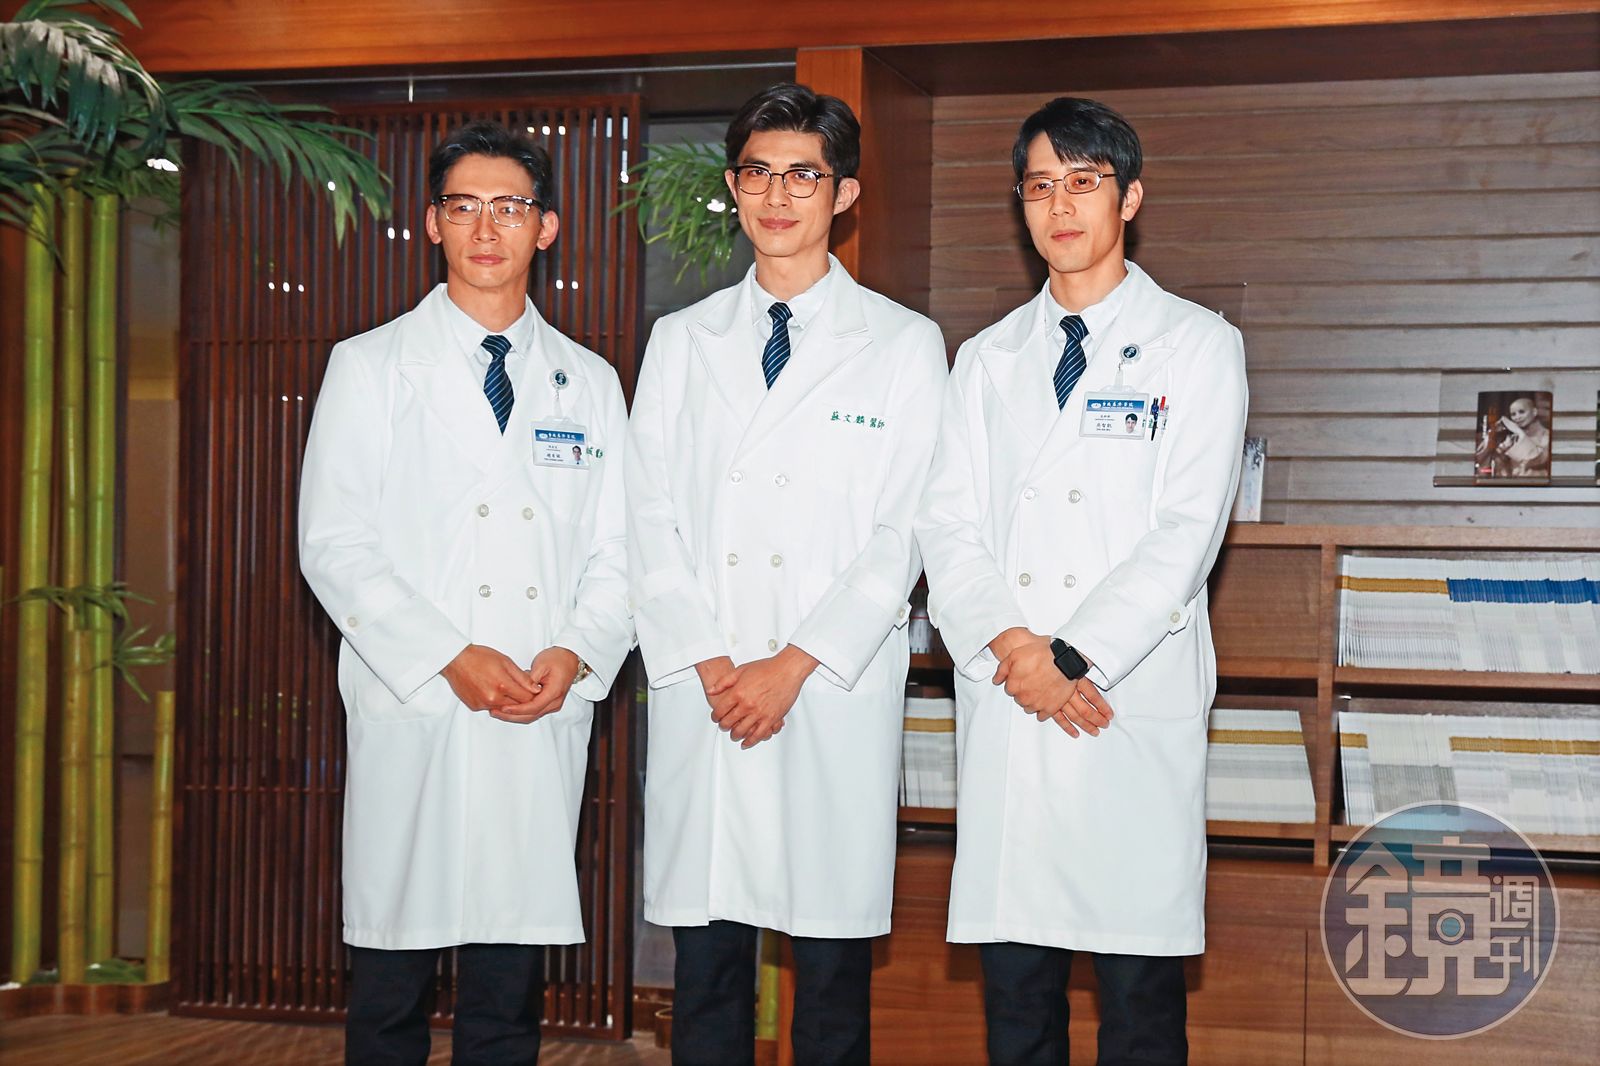 温昇豪（左）近期在新戲《打怪任務》飾演醫院院長，和梁正群（中）、胡宇威（右）並肩作戰